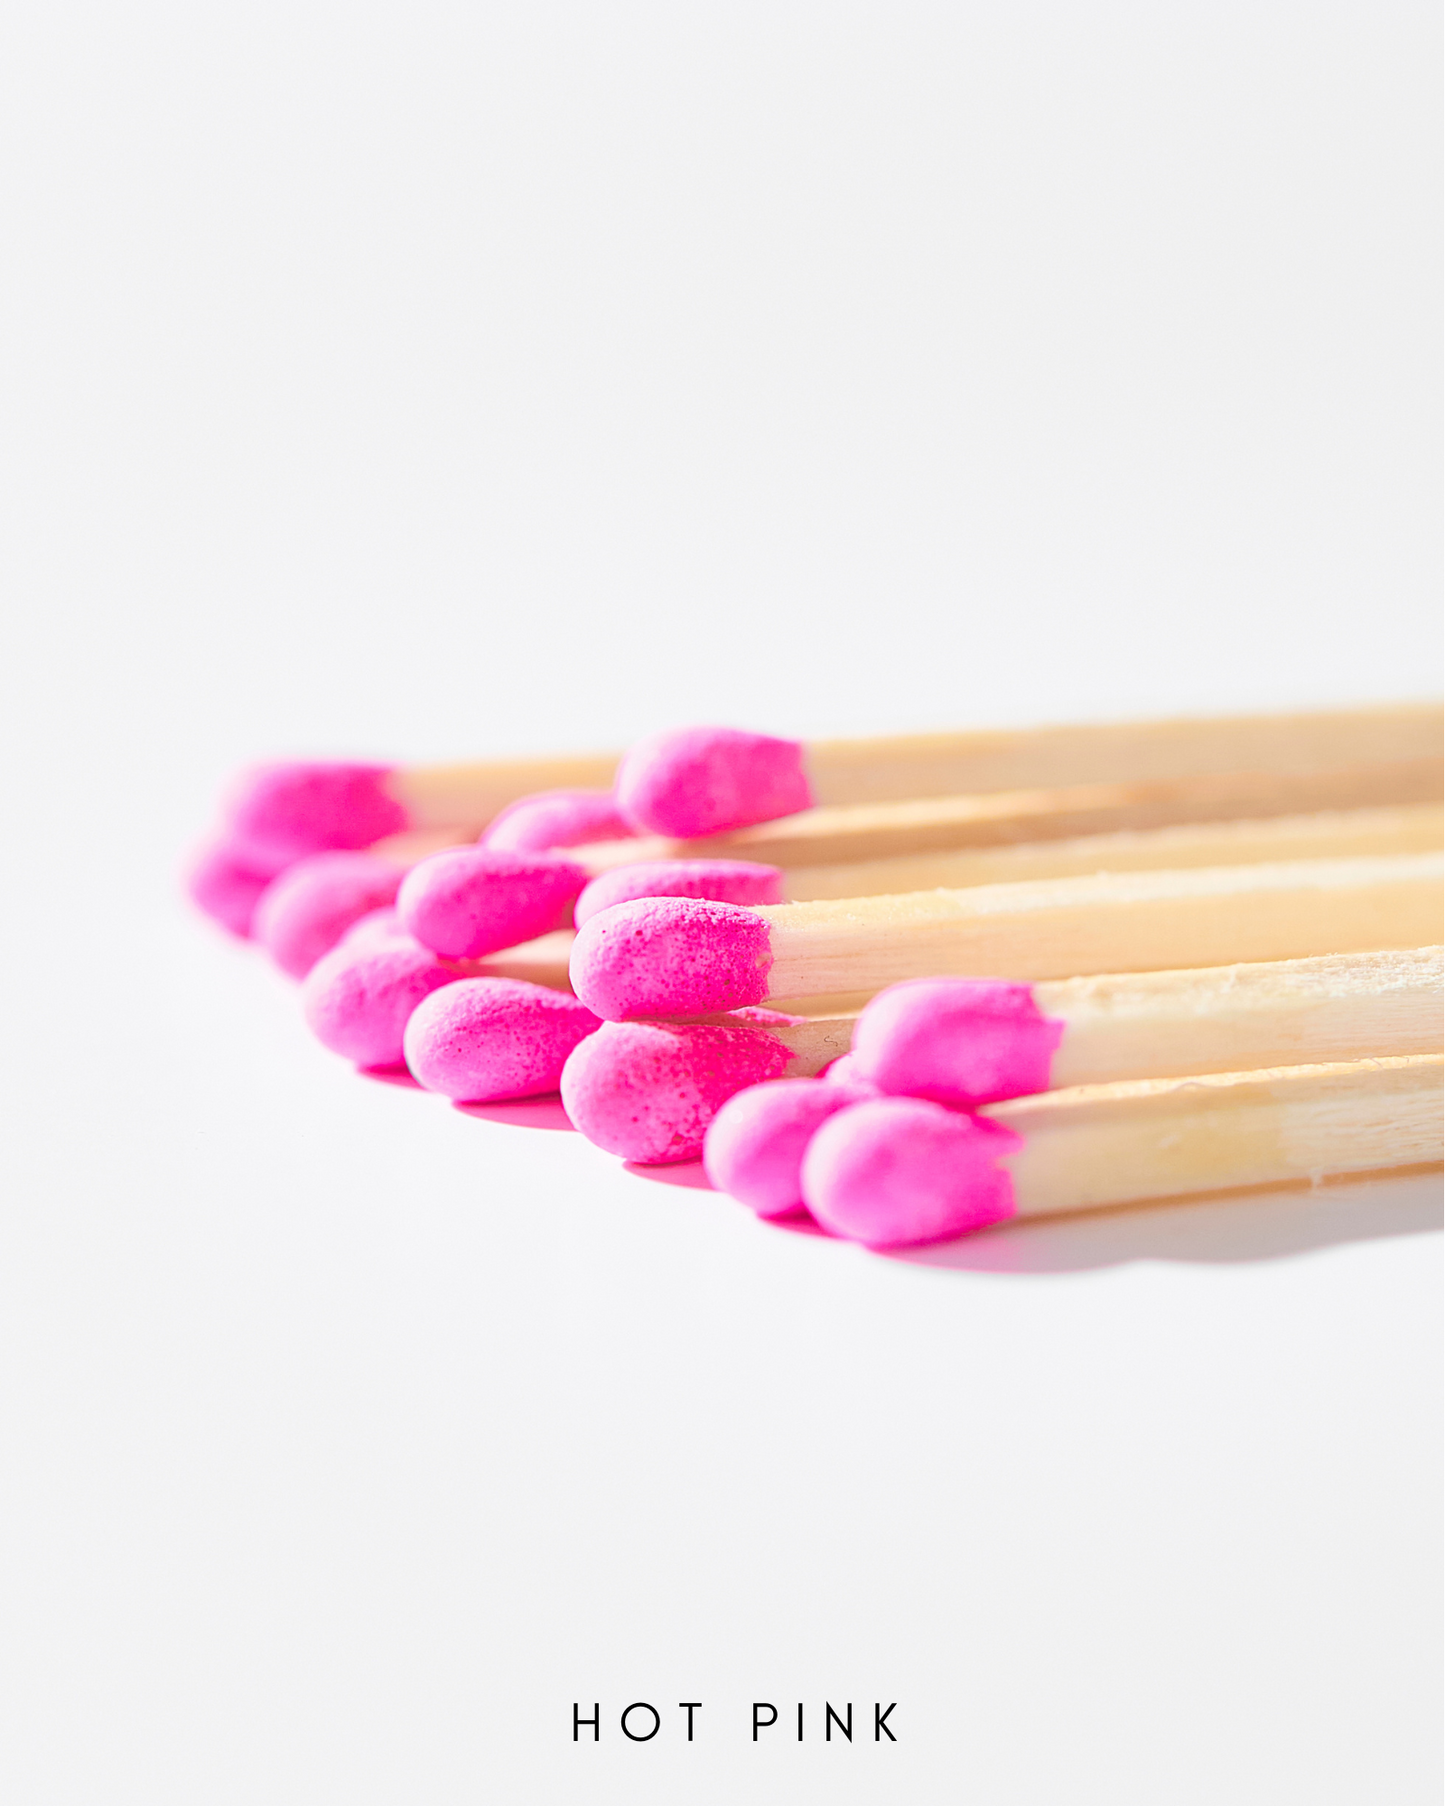 a close up of a group of pink matchesticks